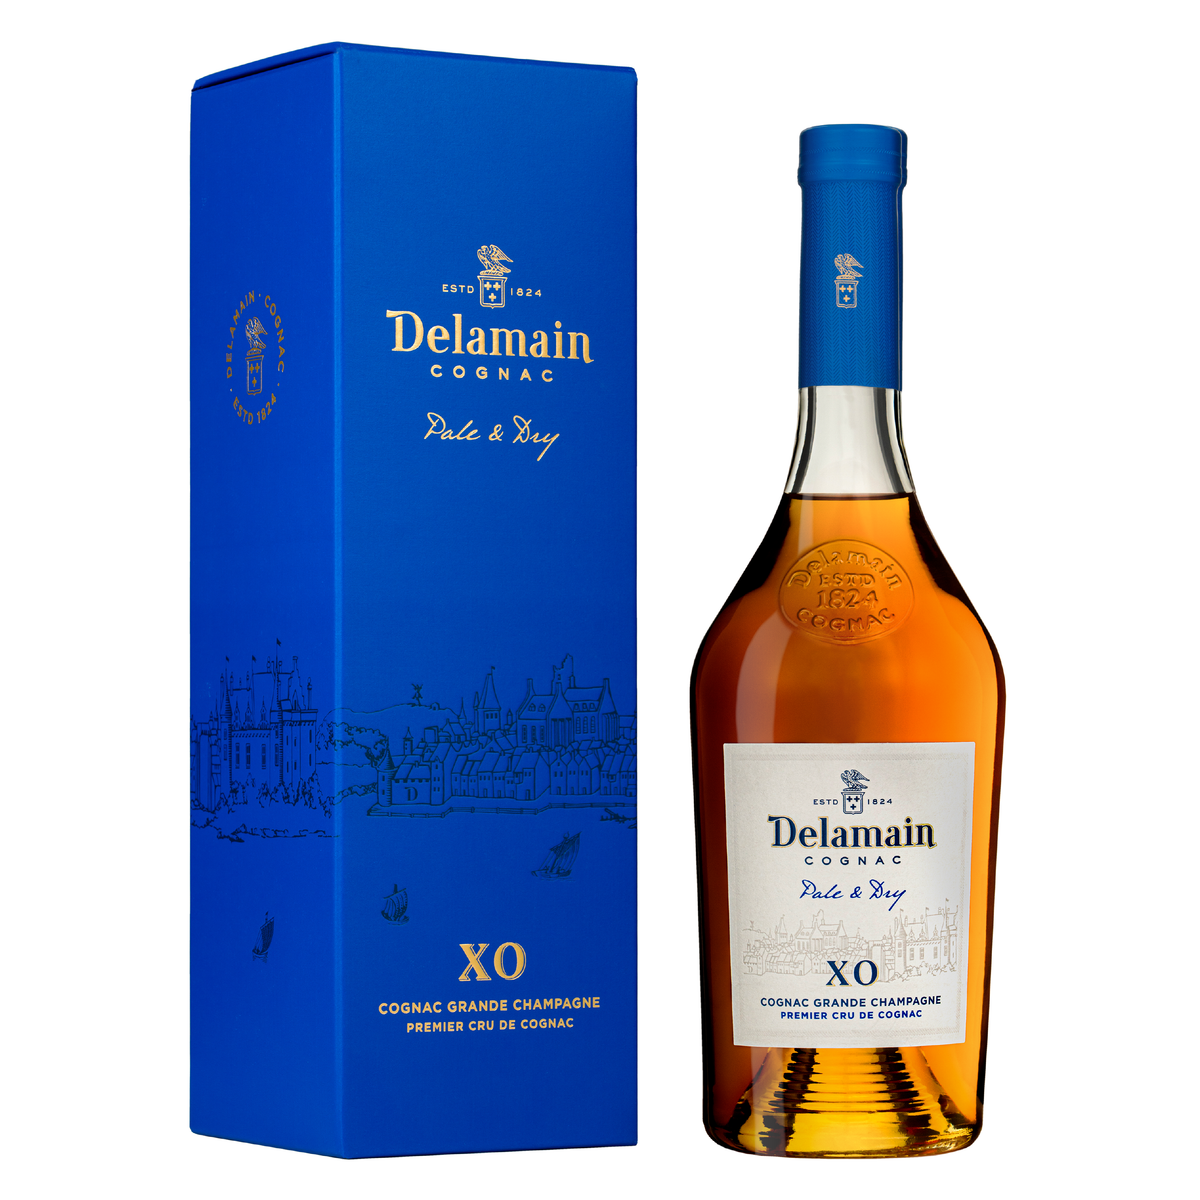 DELAMAIN Cognac &quot;Pale &amp; Dry XO&quot; - 70cl with Gift Box